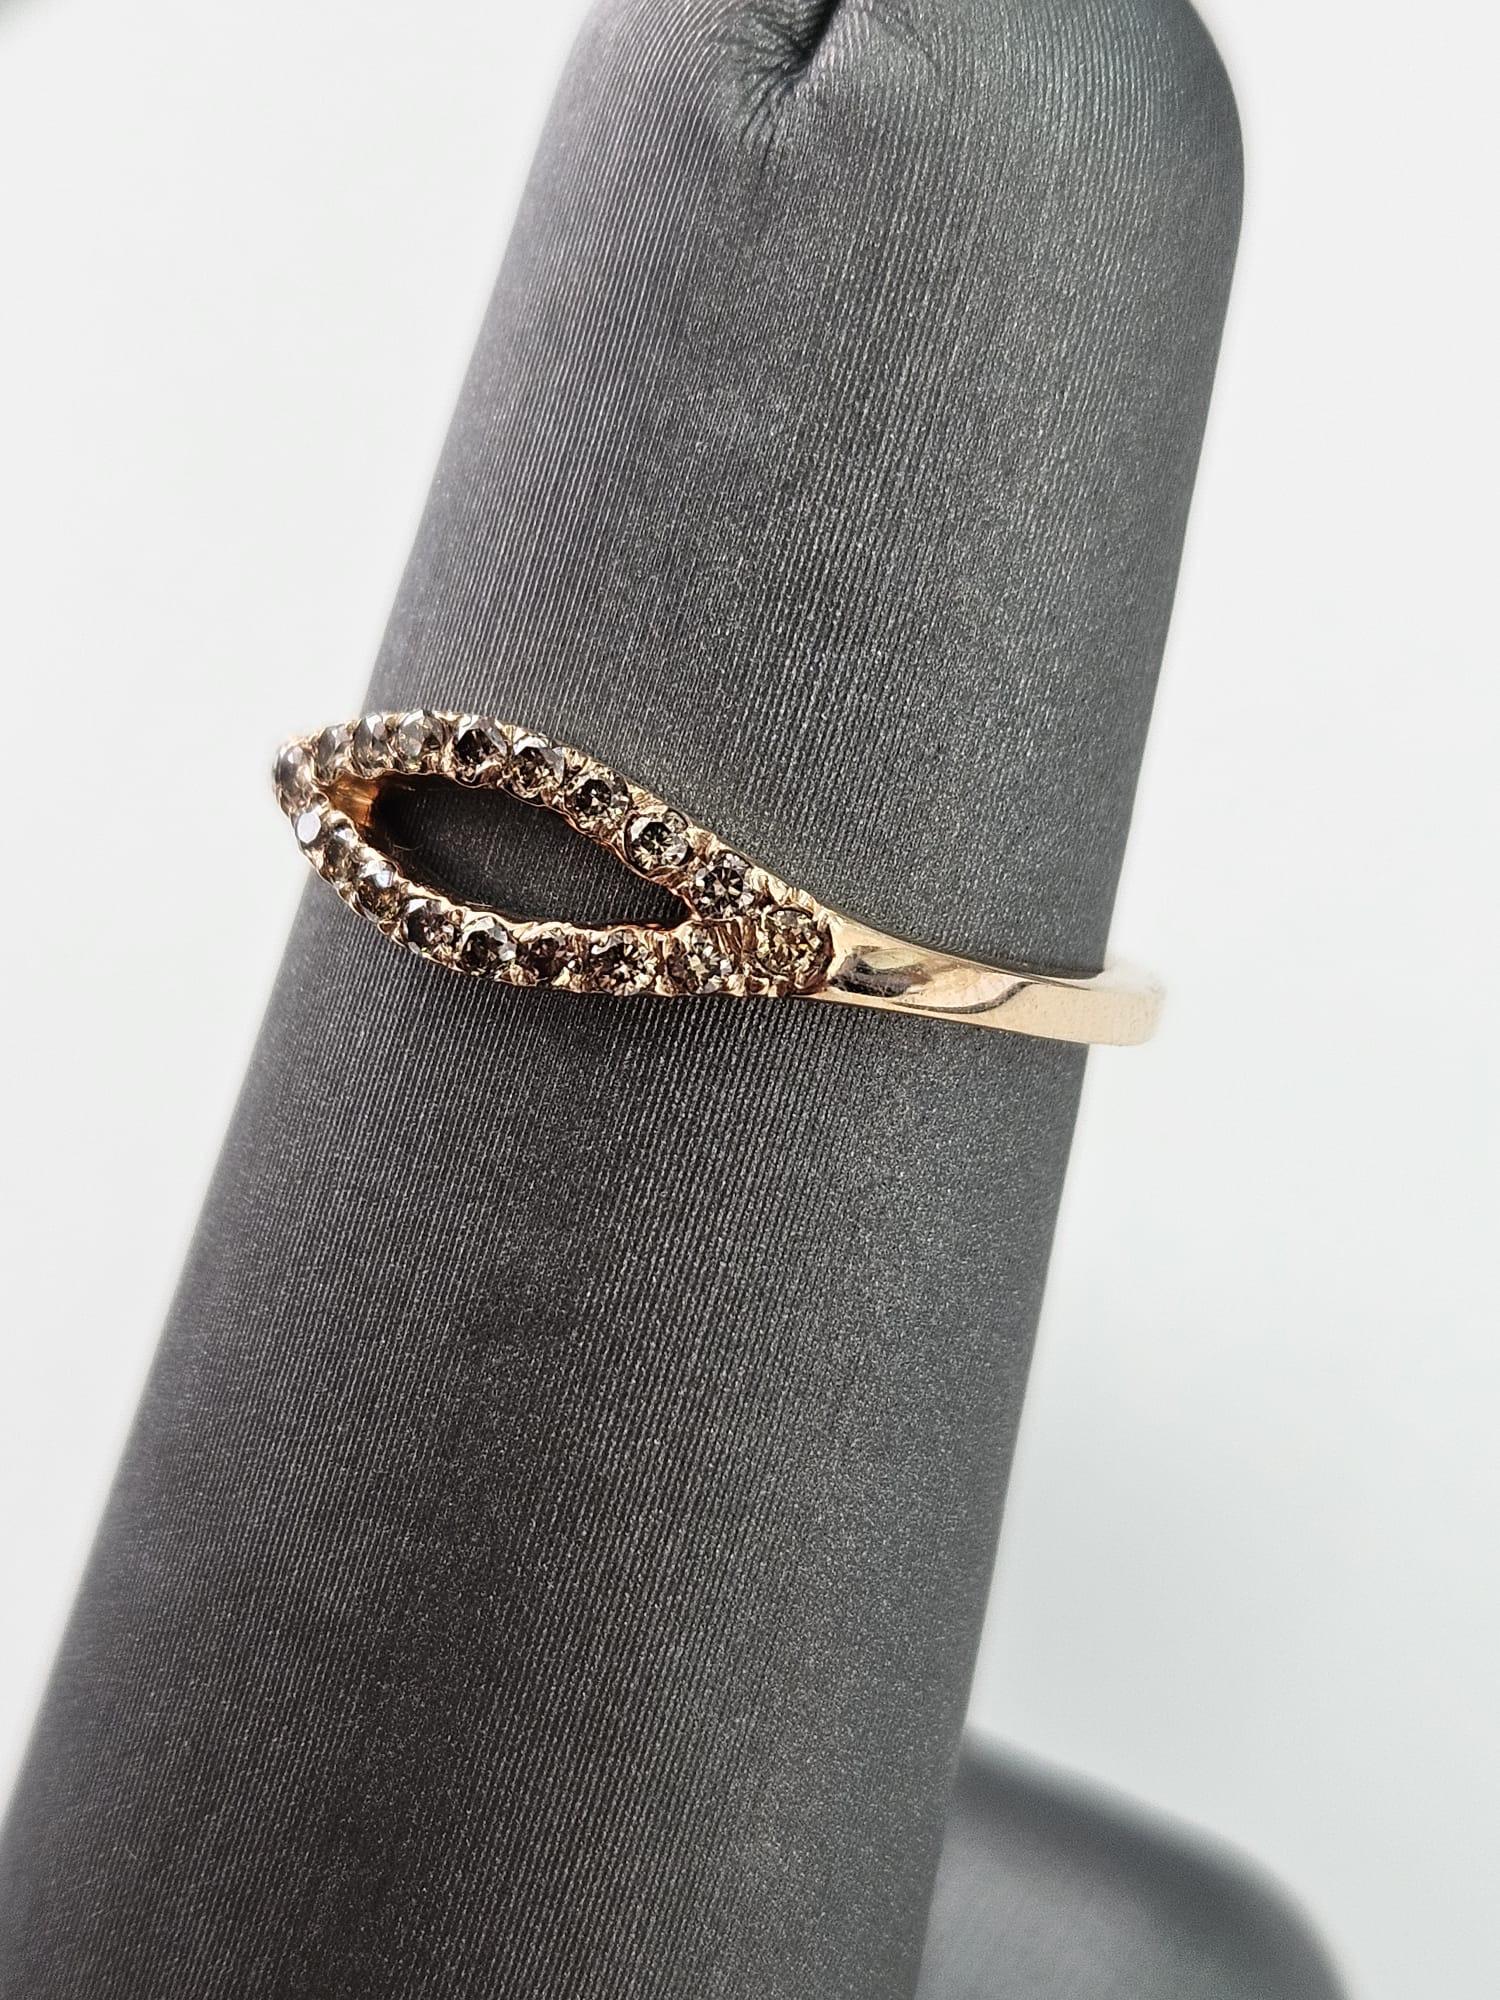 Wir präsentieren einen faszinierenden und eleganten ovalen Ring mit einem braunen Diamanten von 0,22 Karat, der sorgfältig in luxuriösem Roségold gefertigt wurde und Wärme und Raffinesse ausstrahlt. Dieser exquisite Ring zeichnet sich durch